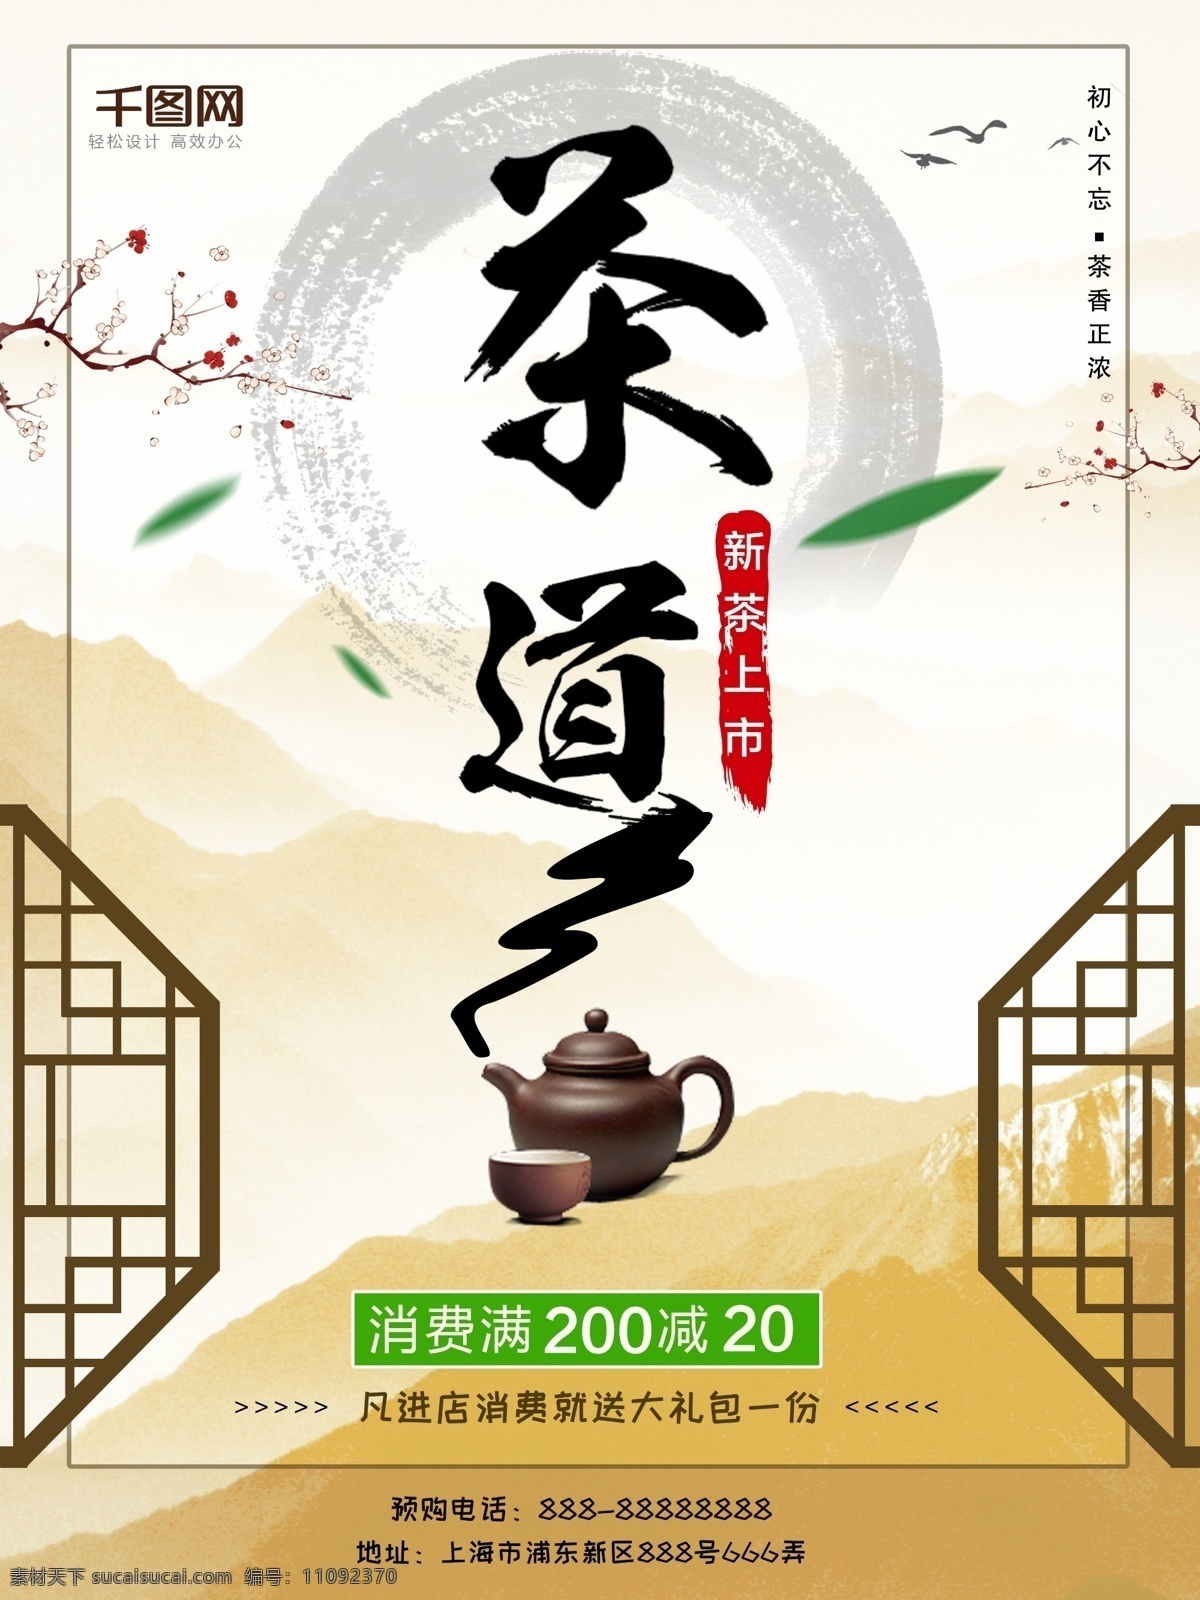 2018 茶道 商城 茶叶 促销 海报 茶文化 茶叶促销 促销海报 茶